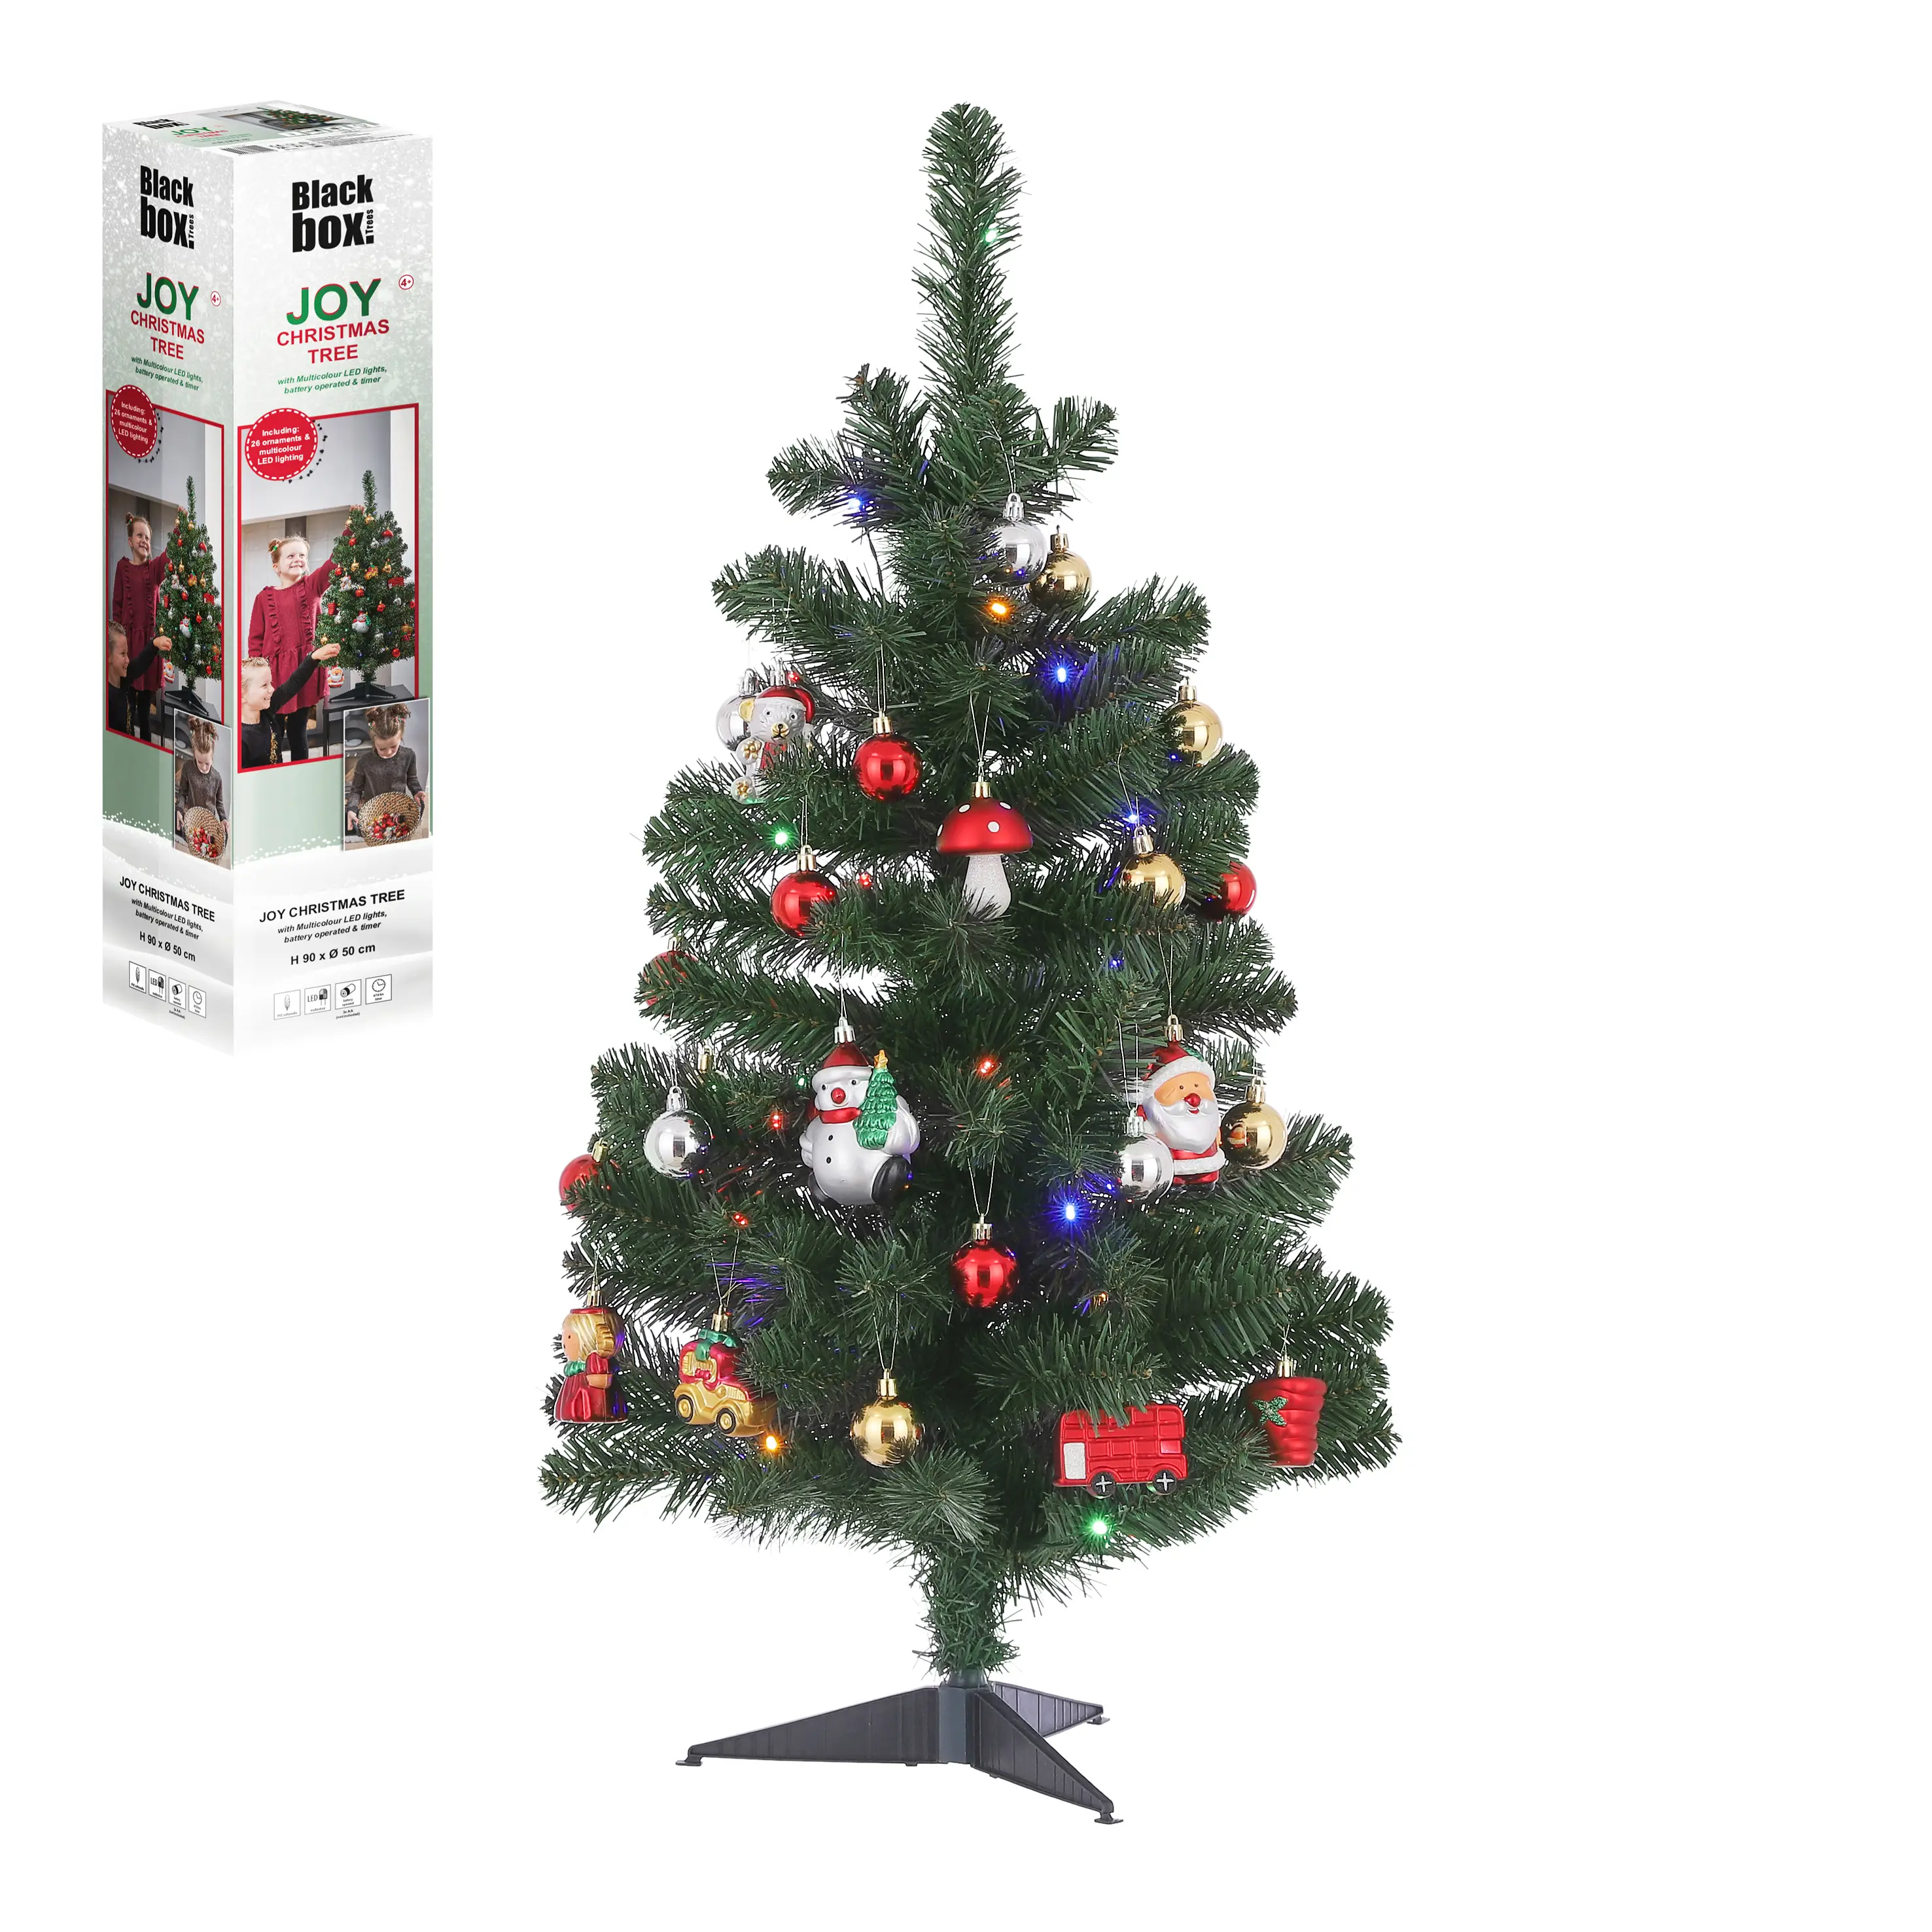 LED Deko und Weihnachtsbaum mit Joy